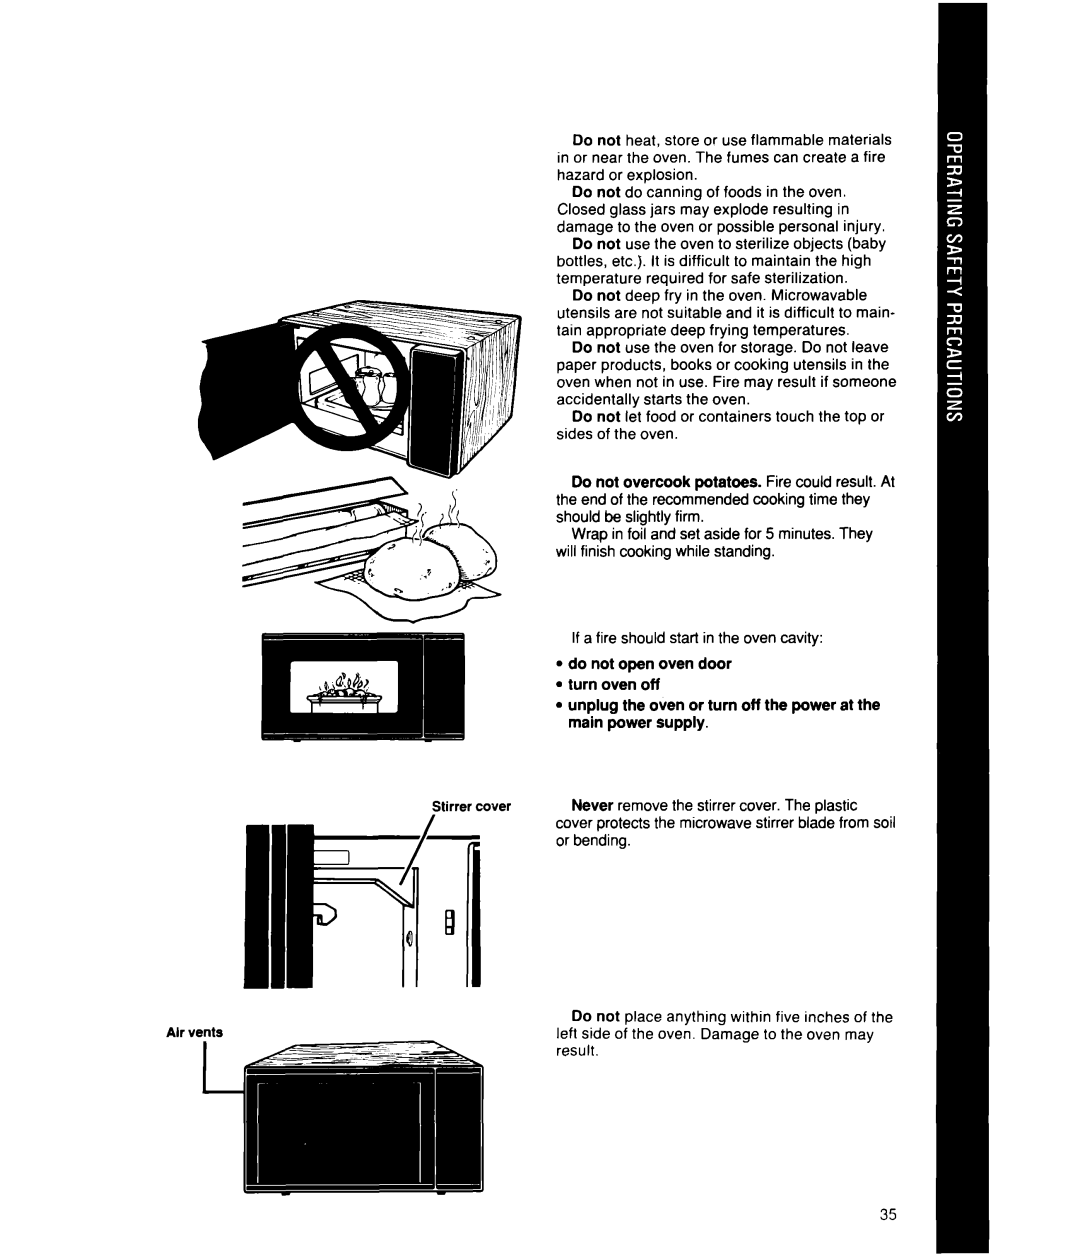 Whirlpool MS2101XW, MS2100XW manual ldo not open oven door l turn oven off 